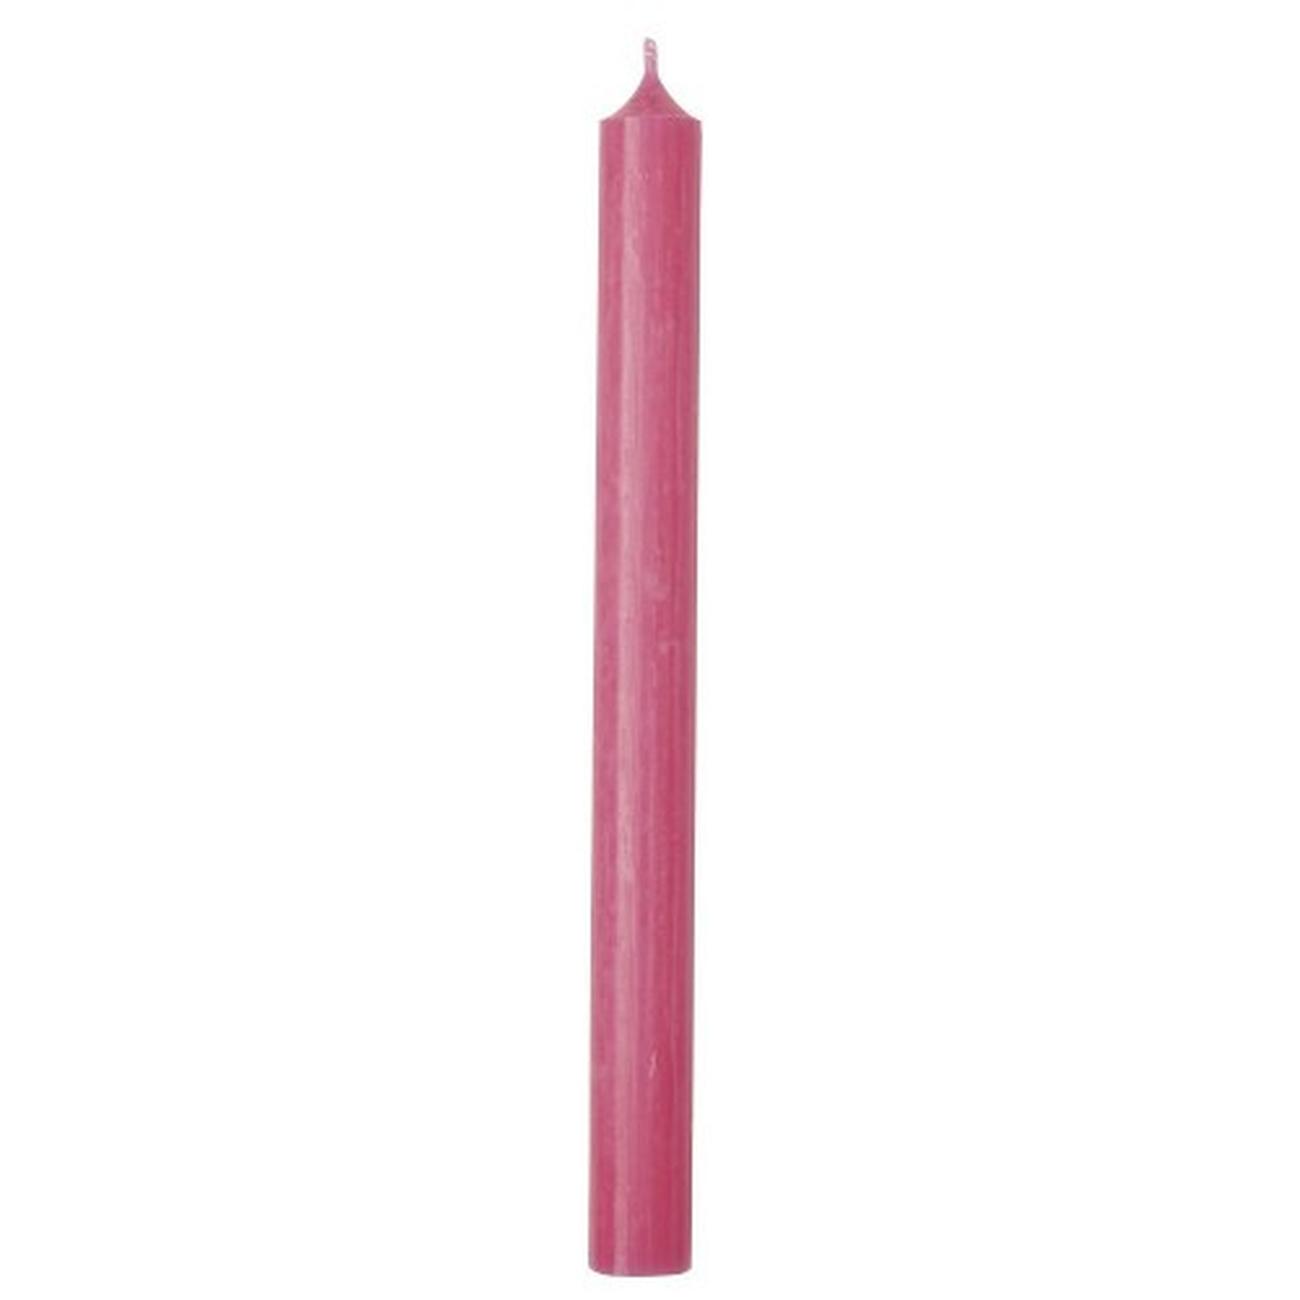 ihr-cylinder-candle-pink - IHR Cylinder Candle Pink